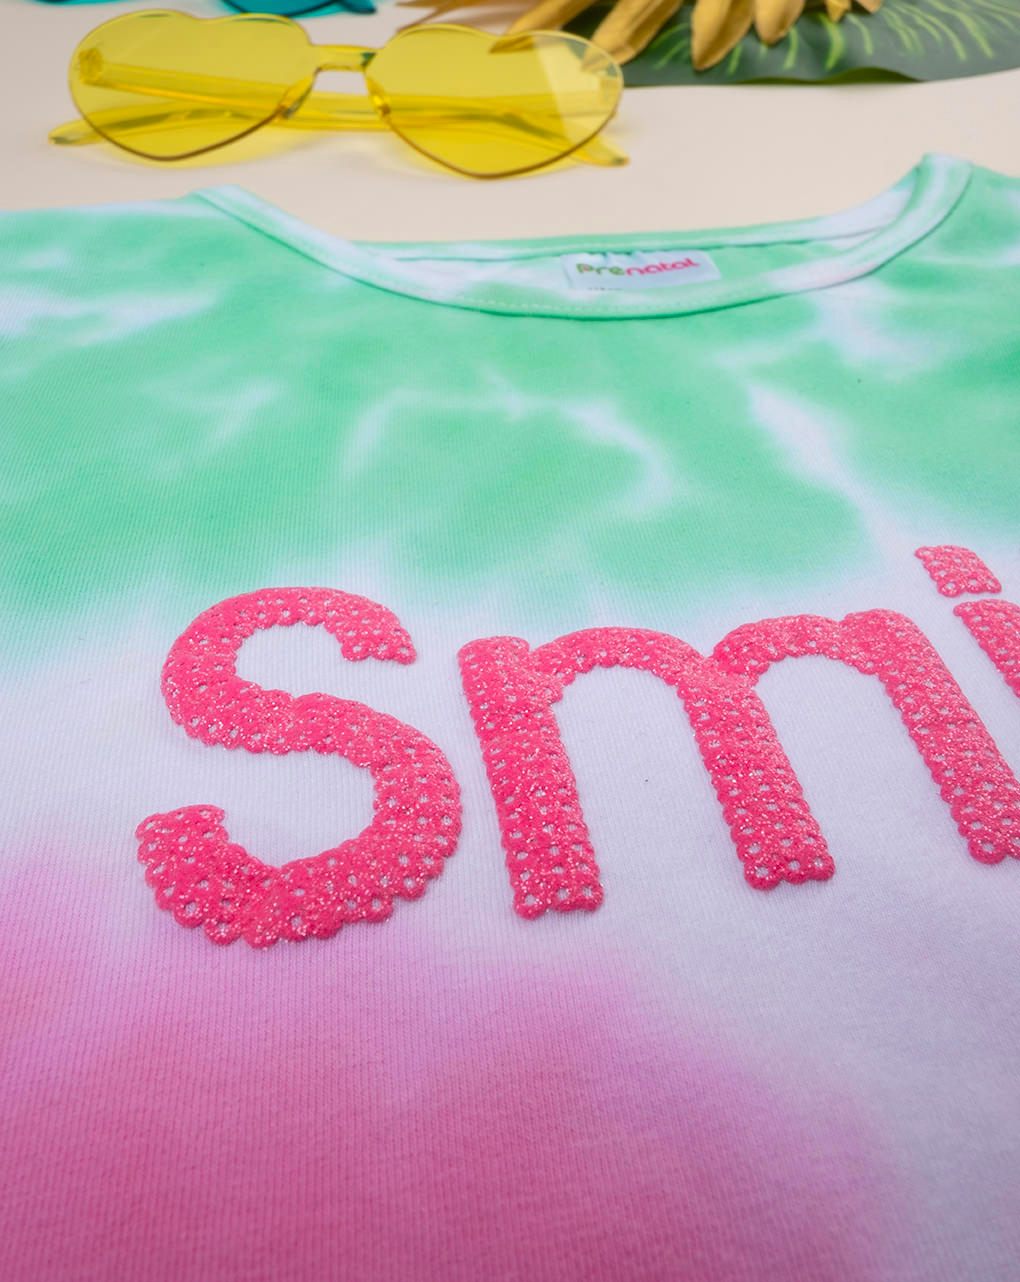 Camiseta niña tie-dye "smile" (sonrisa) - Prénatal